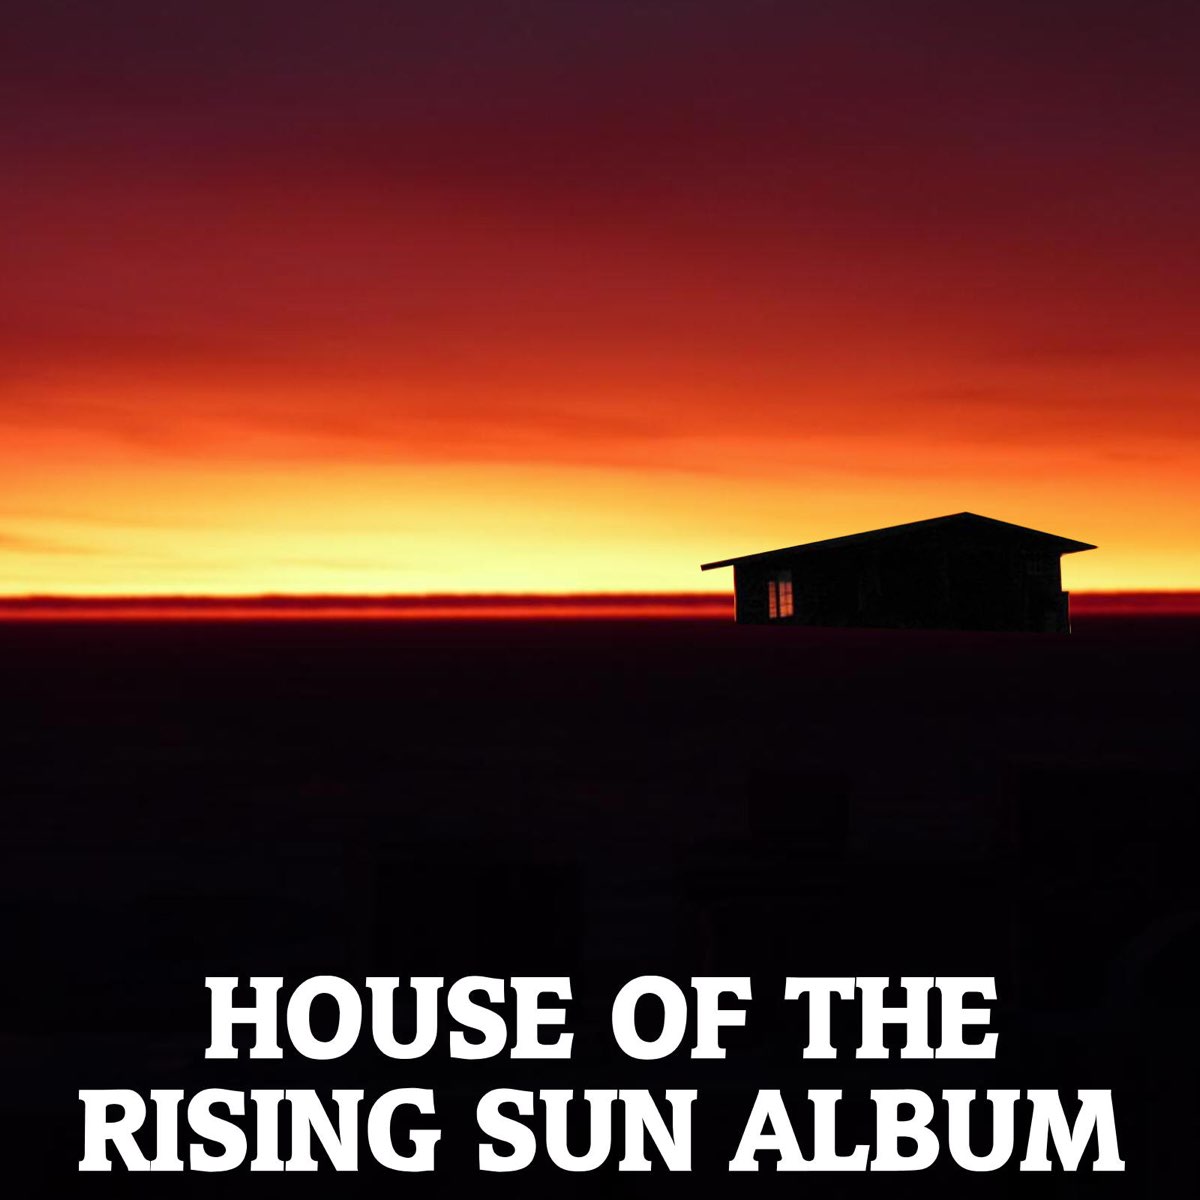 House of the Rising Sun. House of Rising Sun альбом. Дом восходящего солнца новый Орлеан. House of the Rising Sun обложка. Энималс слушать дом